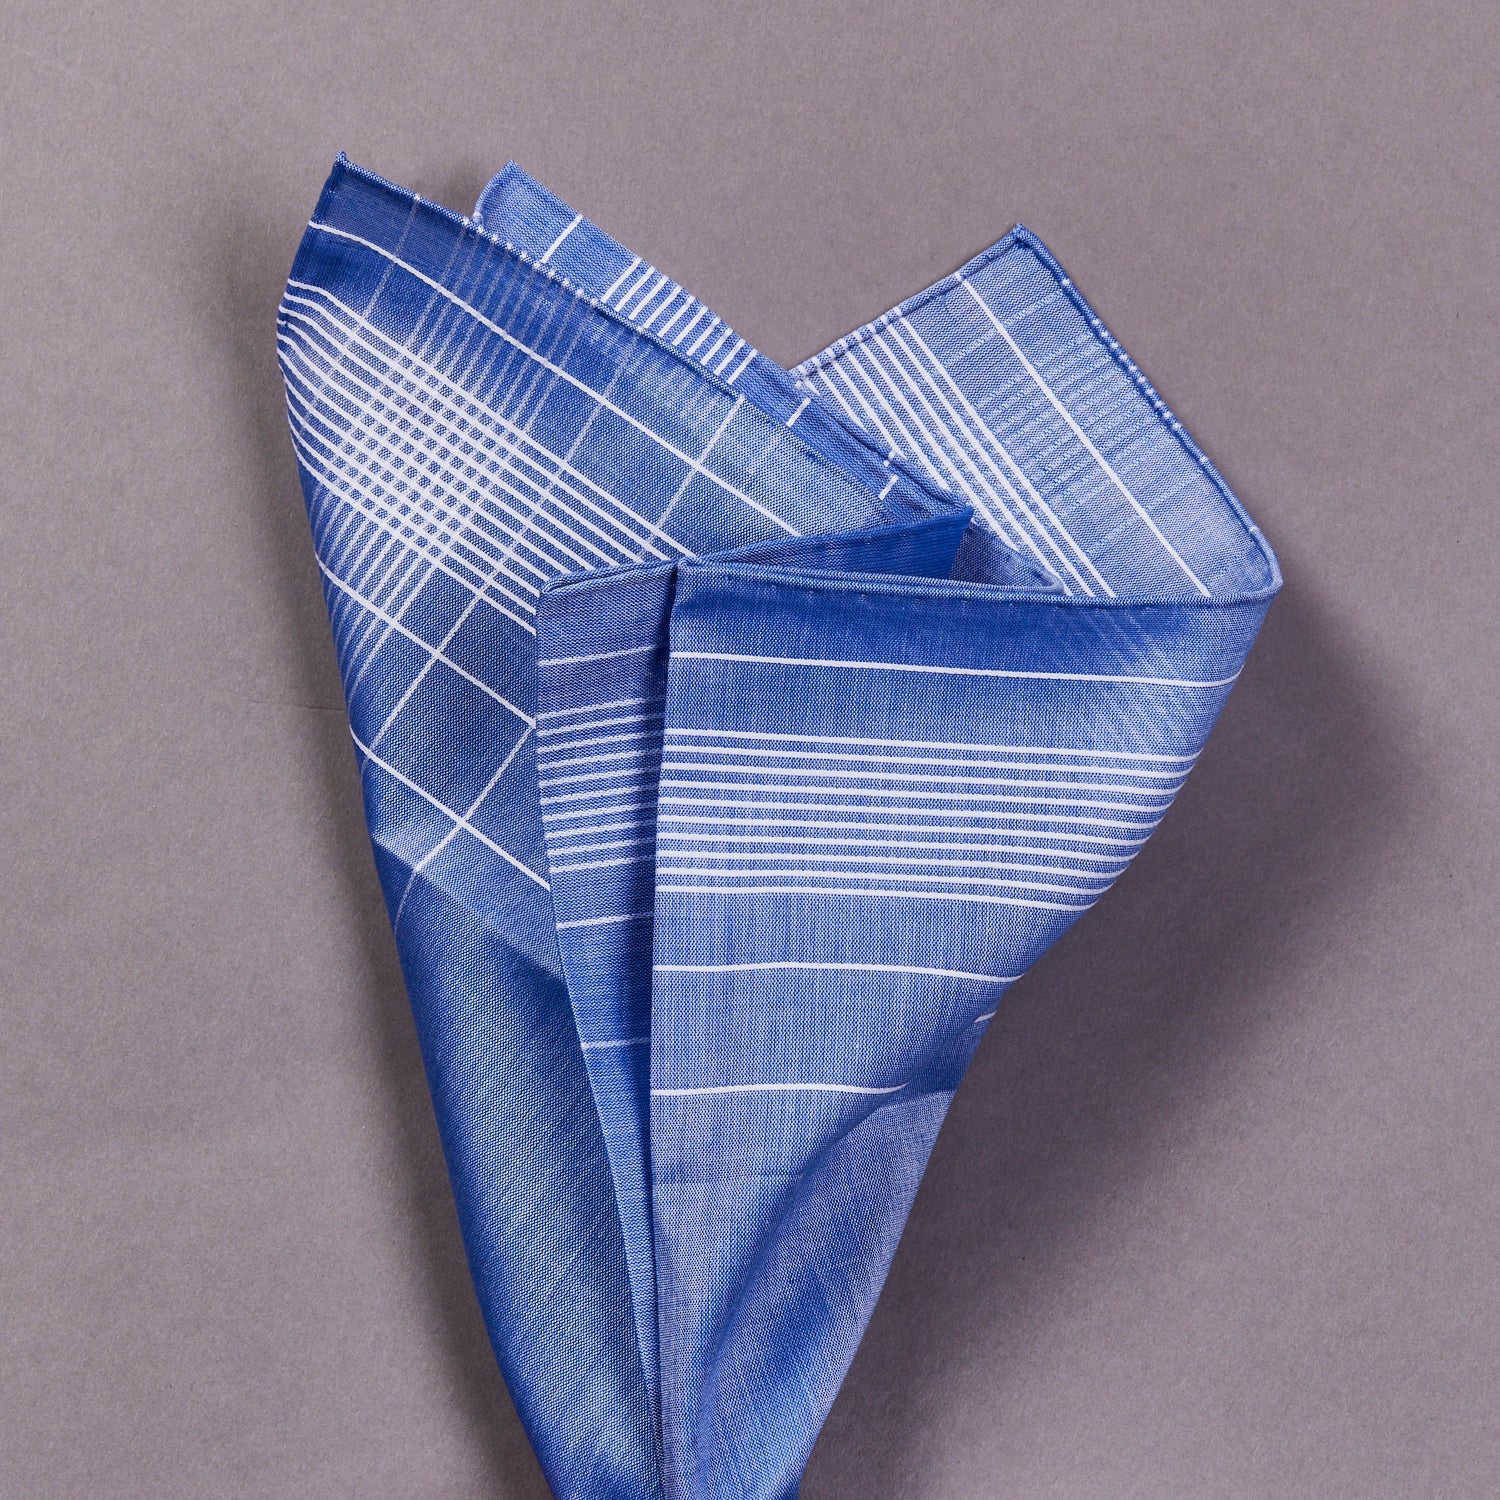 Simonnot Godard Harlan Cotton Handkerchief